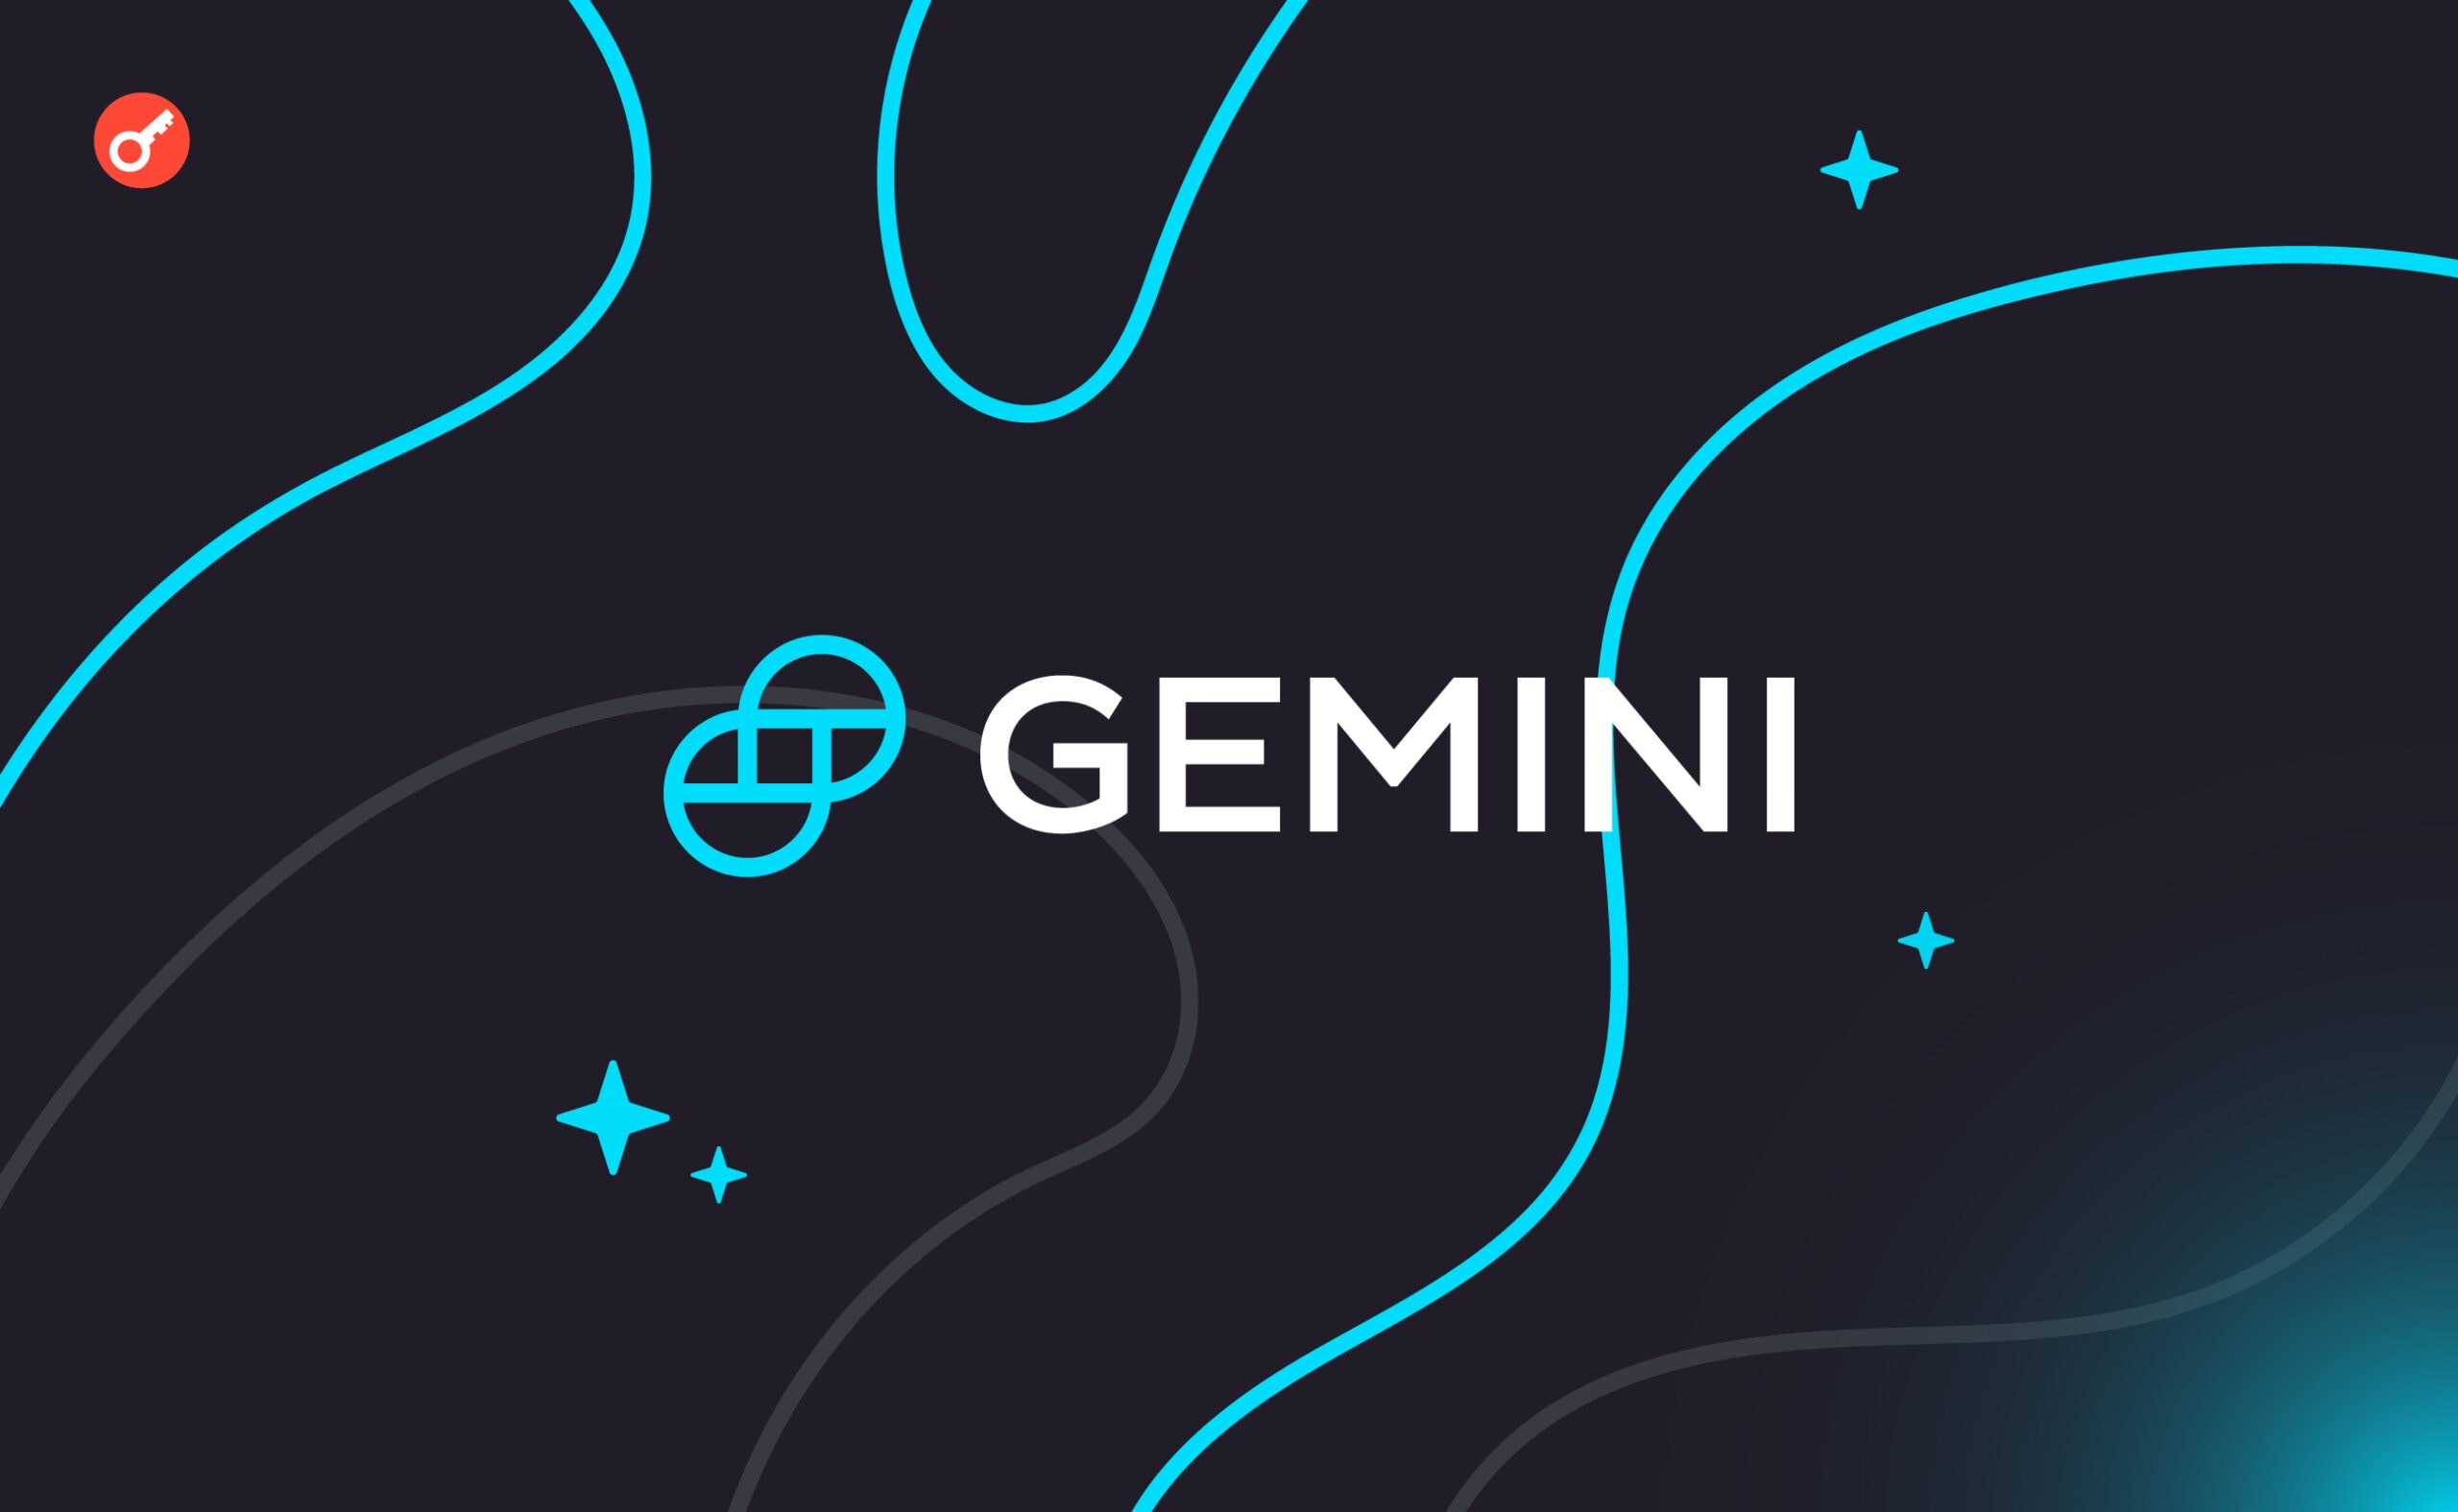 Gemini вернет 100% активов участникам программы Earn. Заглавный коллаж новости.